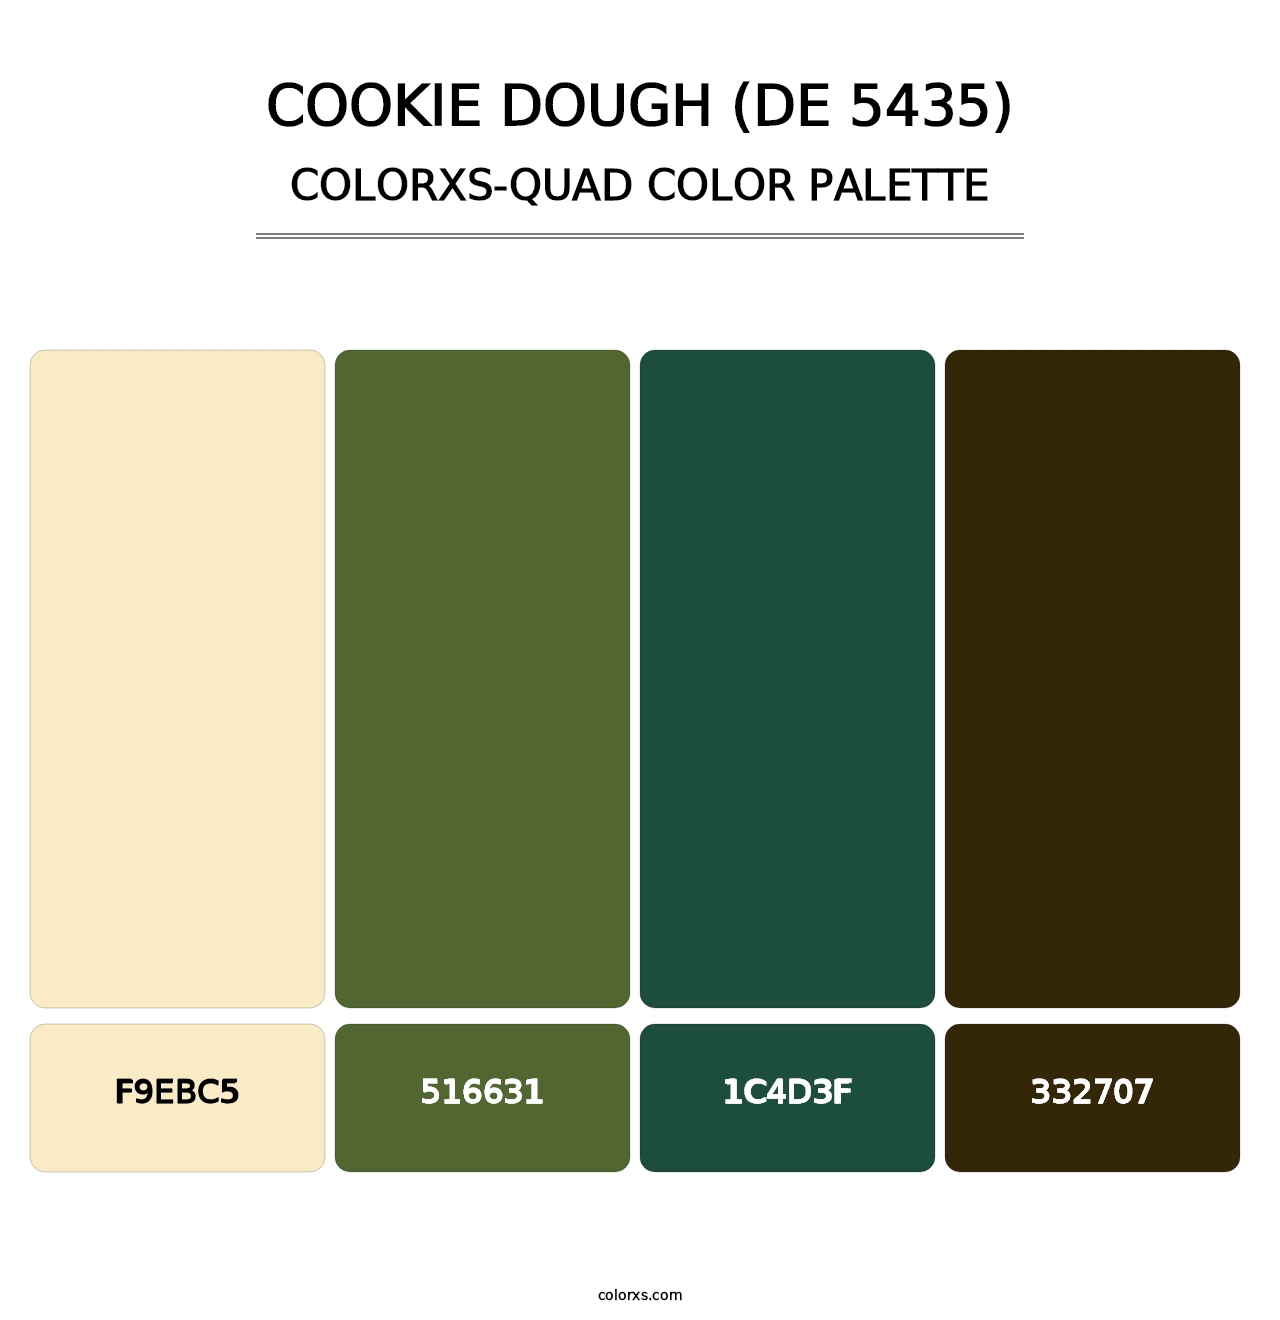 Cookie Dough (DE 5435) - Colorxs Quad Palette